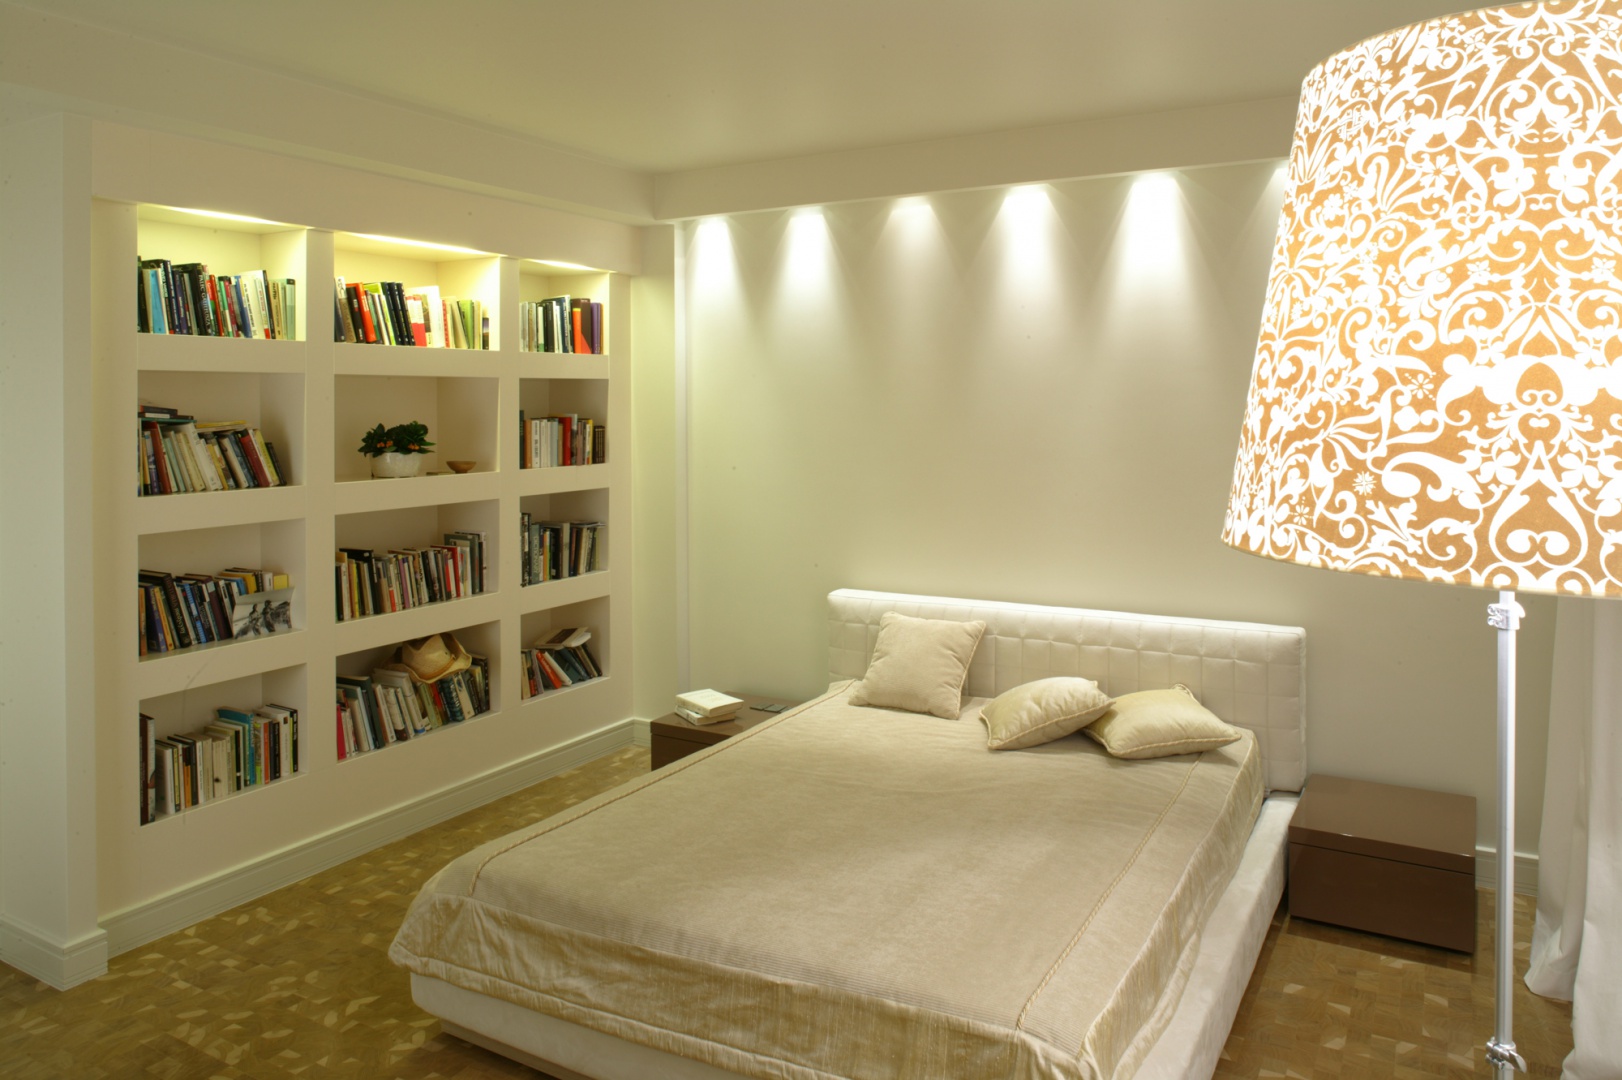 Łóżko z pikowanym zagłówkiem to wytworny akcent nowoczesnej i minimalistycznej sypialni. Mebel wyeksponowany został za pomocą światła, które wydobywa się z ukrytych w sufitowym gzymsie halogenów. Fot. Monika Filipiuk.